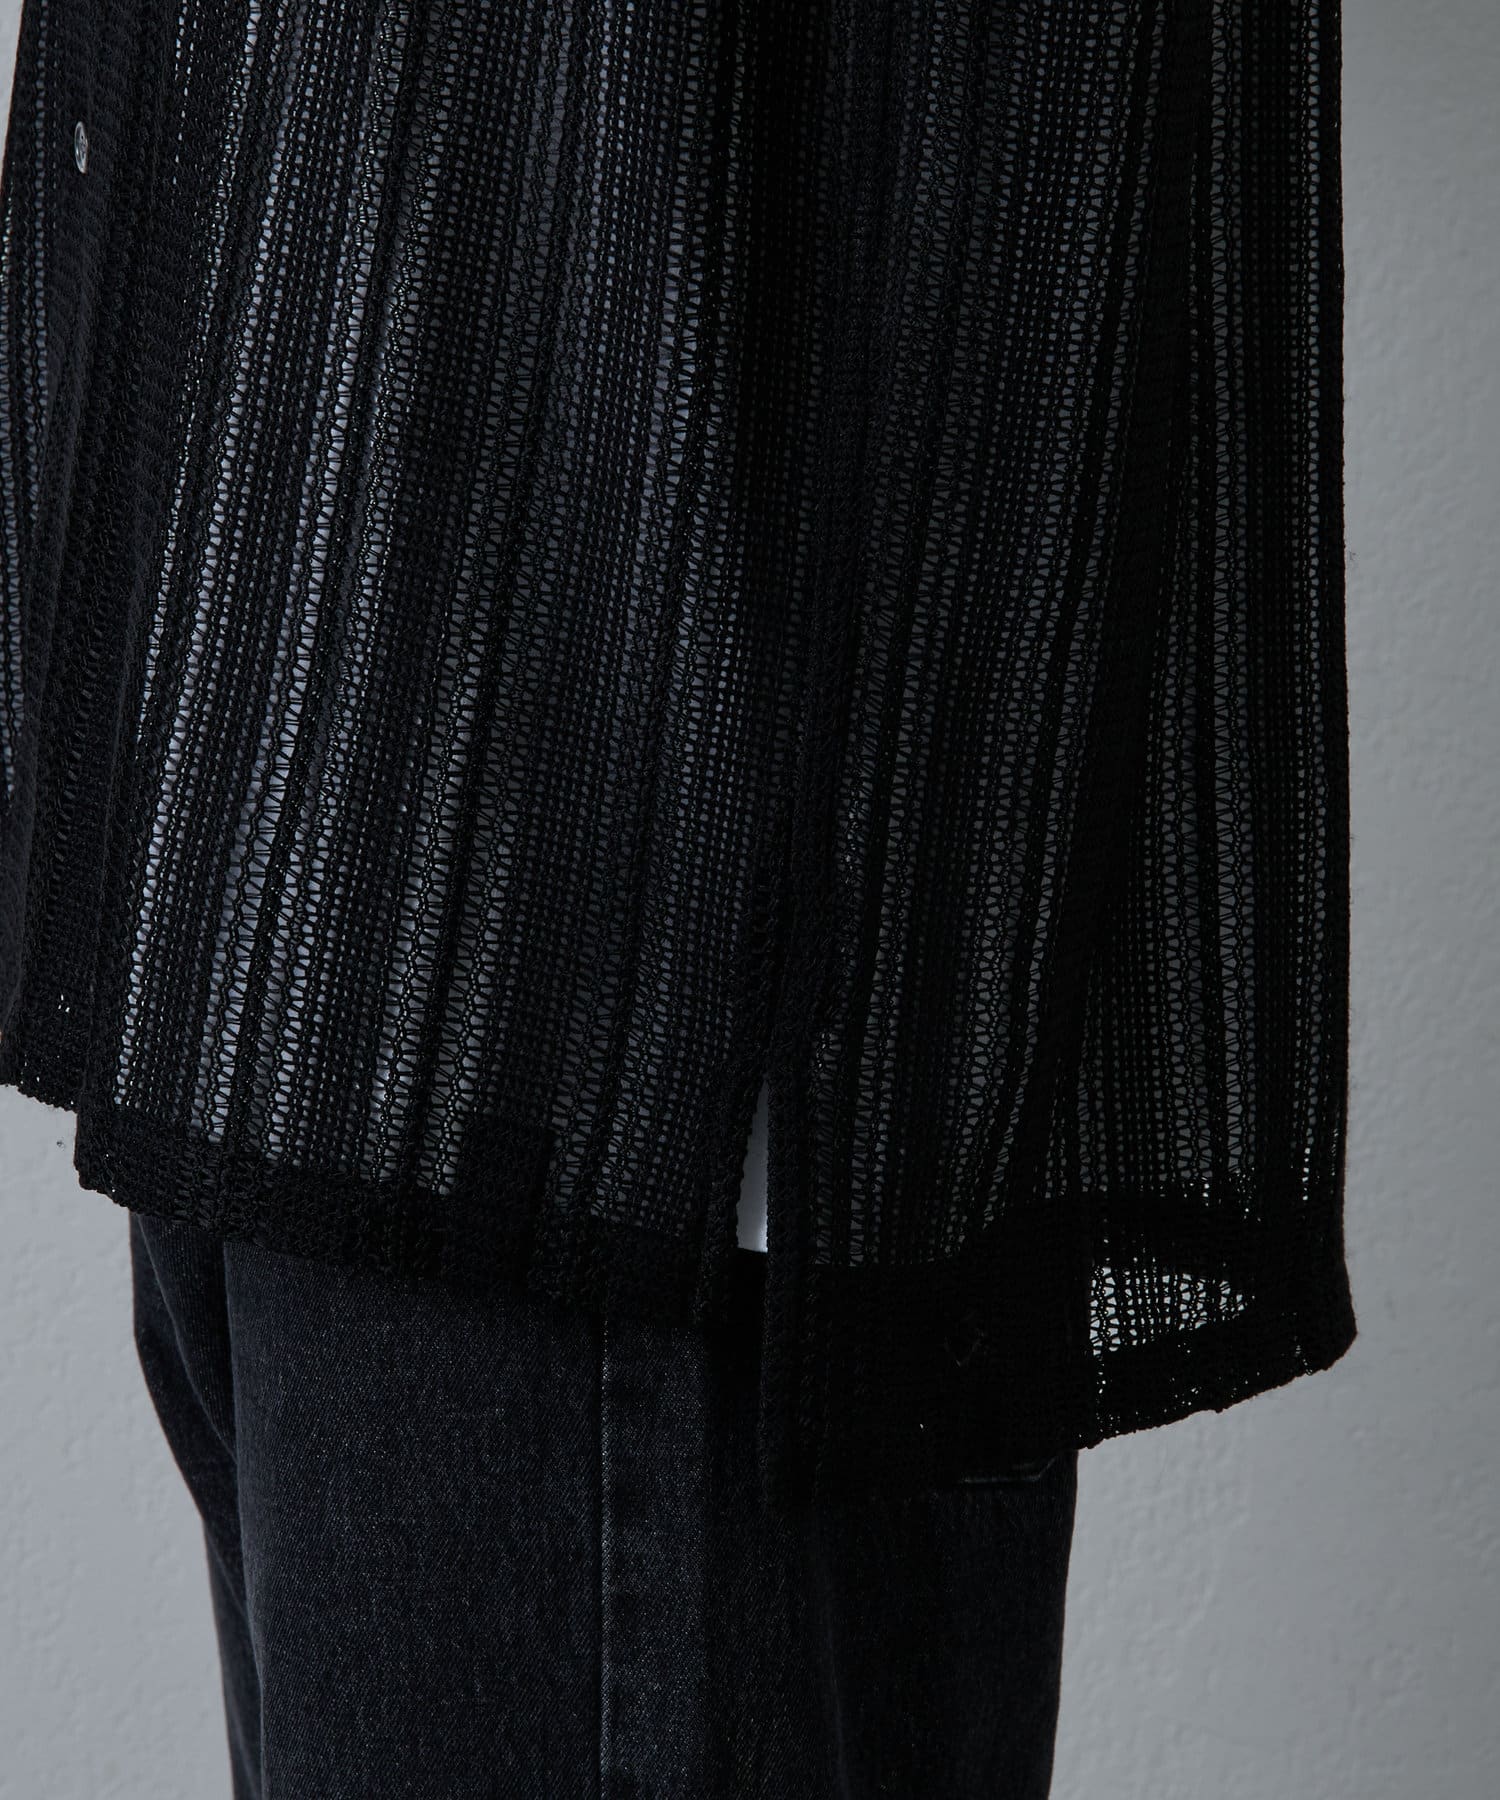 COLONY 2139(コロニー トゥーワンスリーナイン) ニット透かし編み半袖シャツ